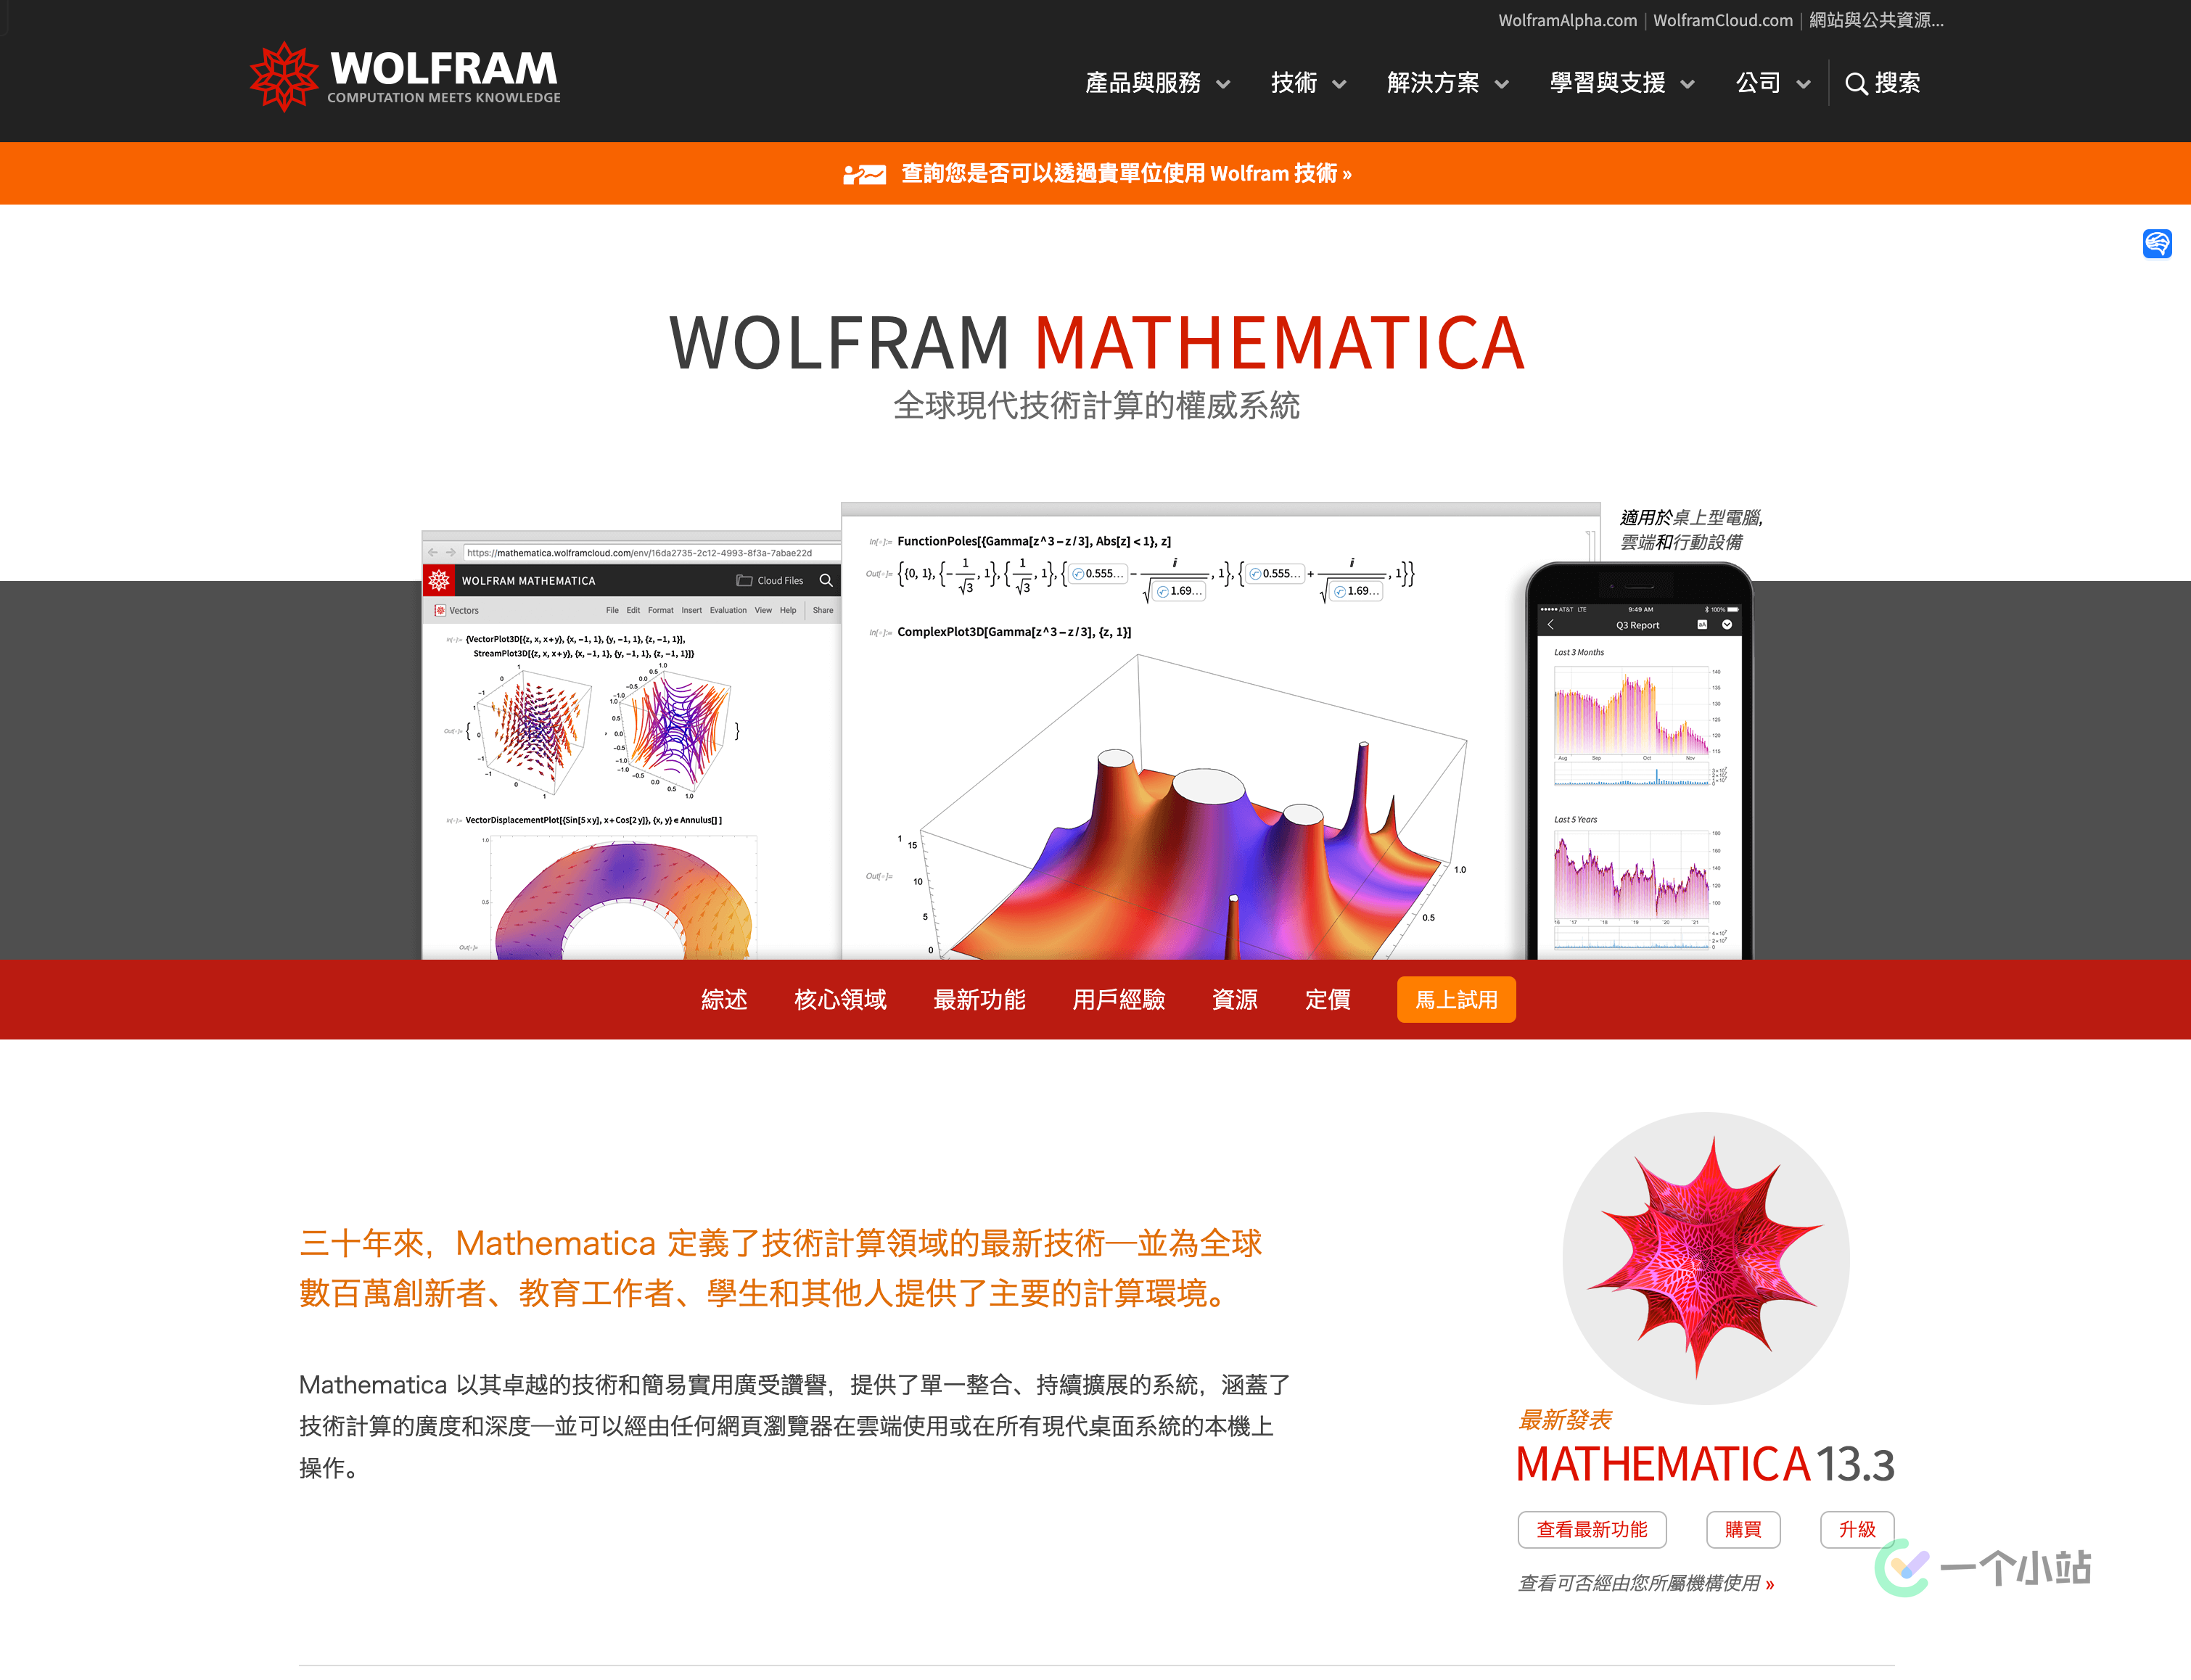 「互联网速记」也许是最优雅的 Wolfram Mathematica 破解方式 - 1